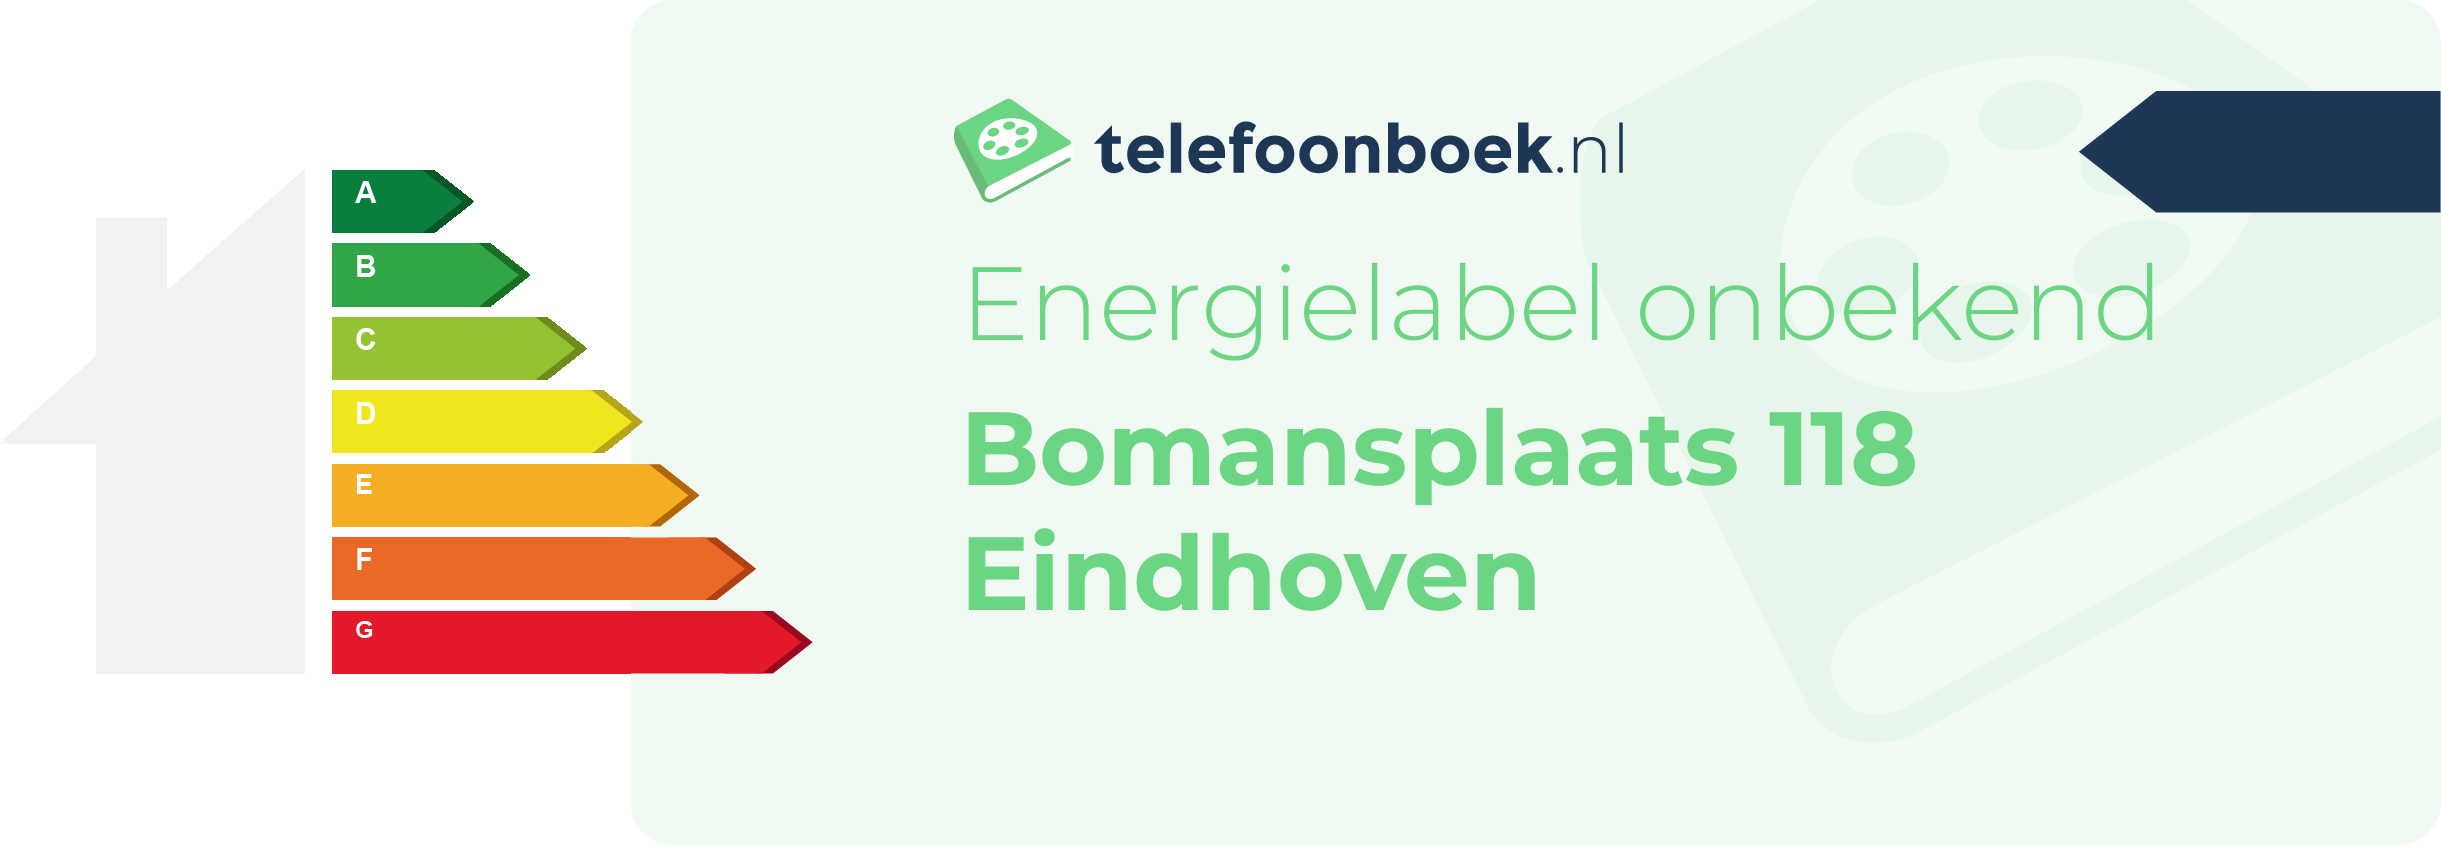 Energielabel Bomansplaats 118 Eindhoven